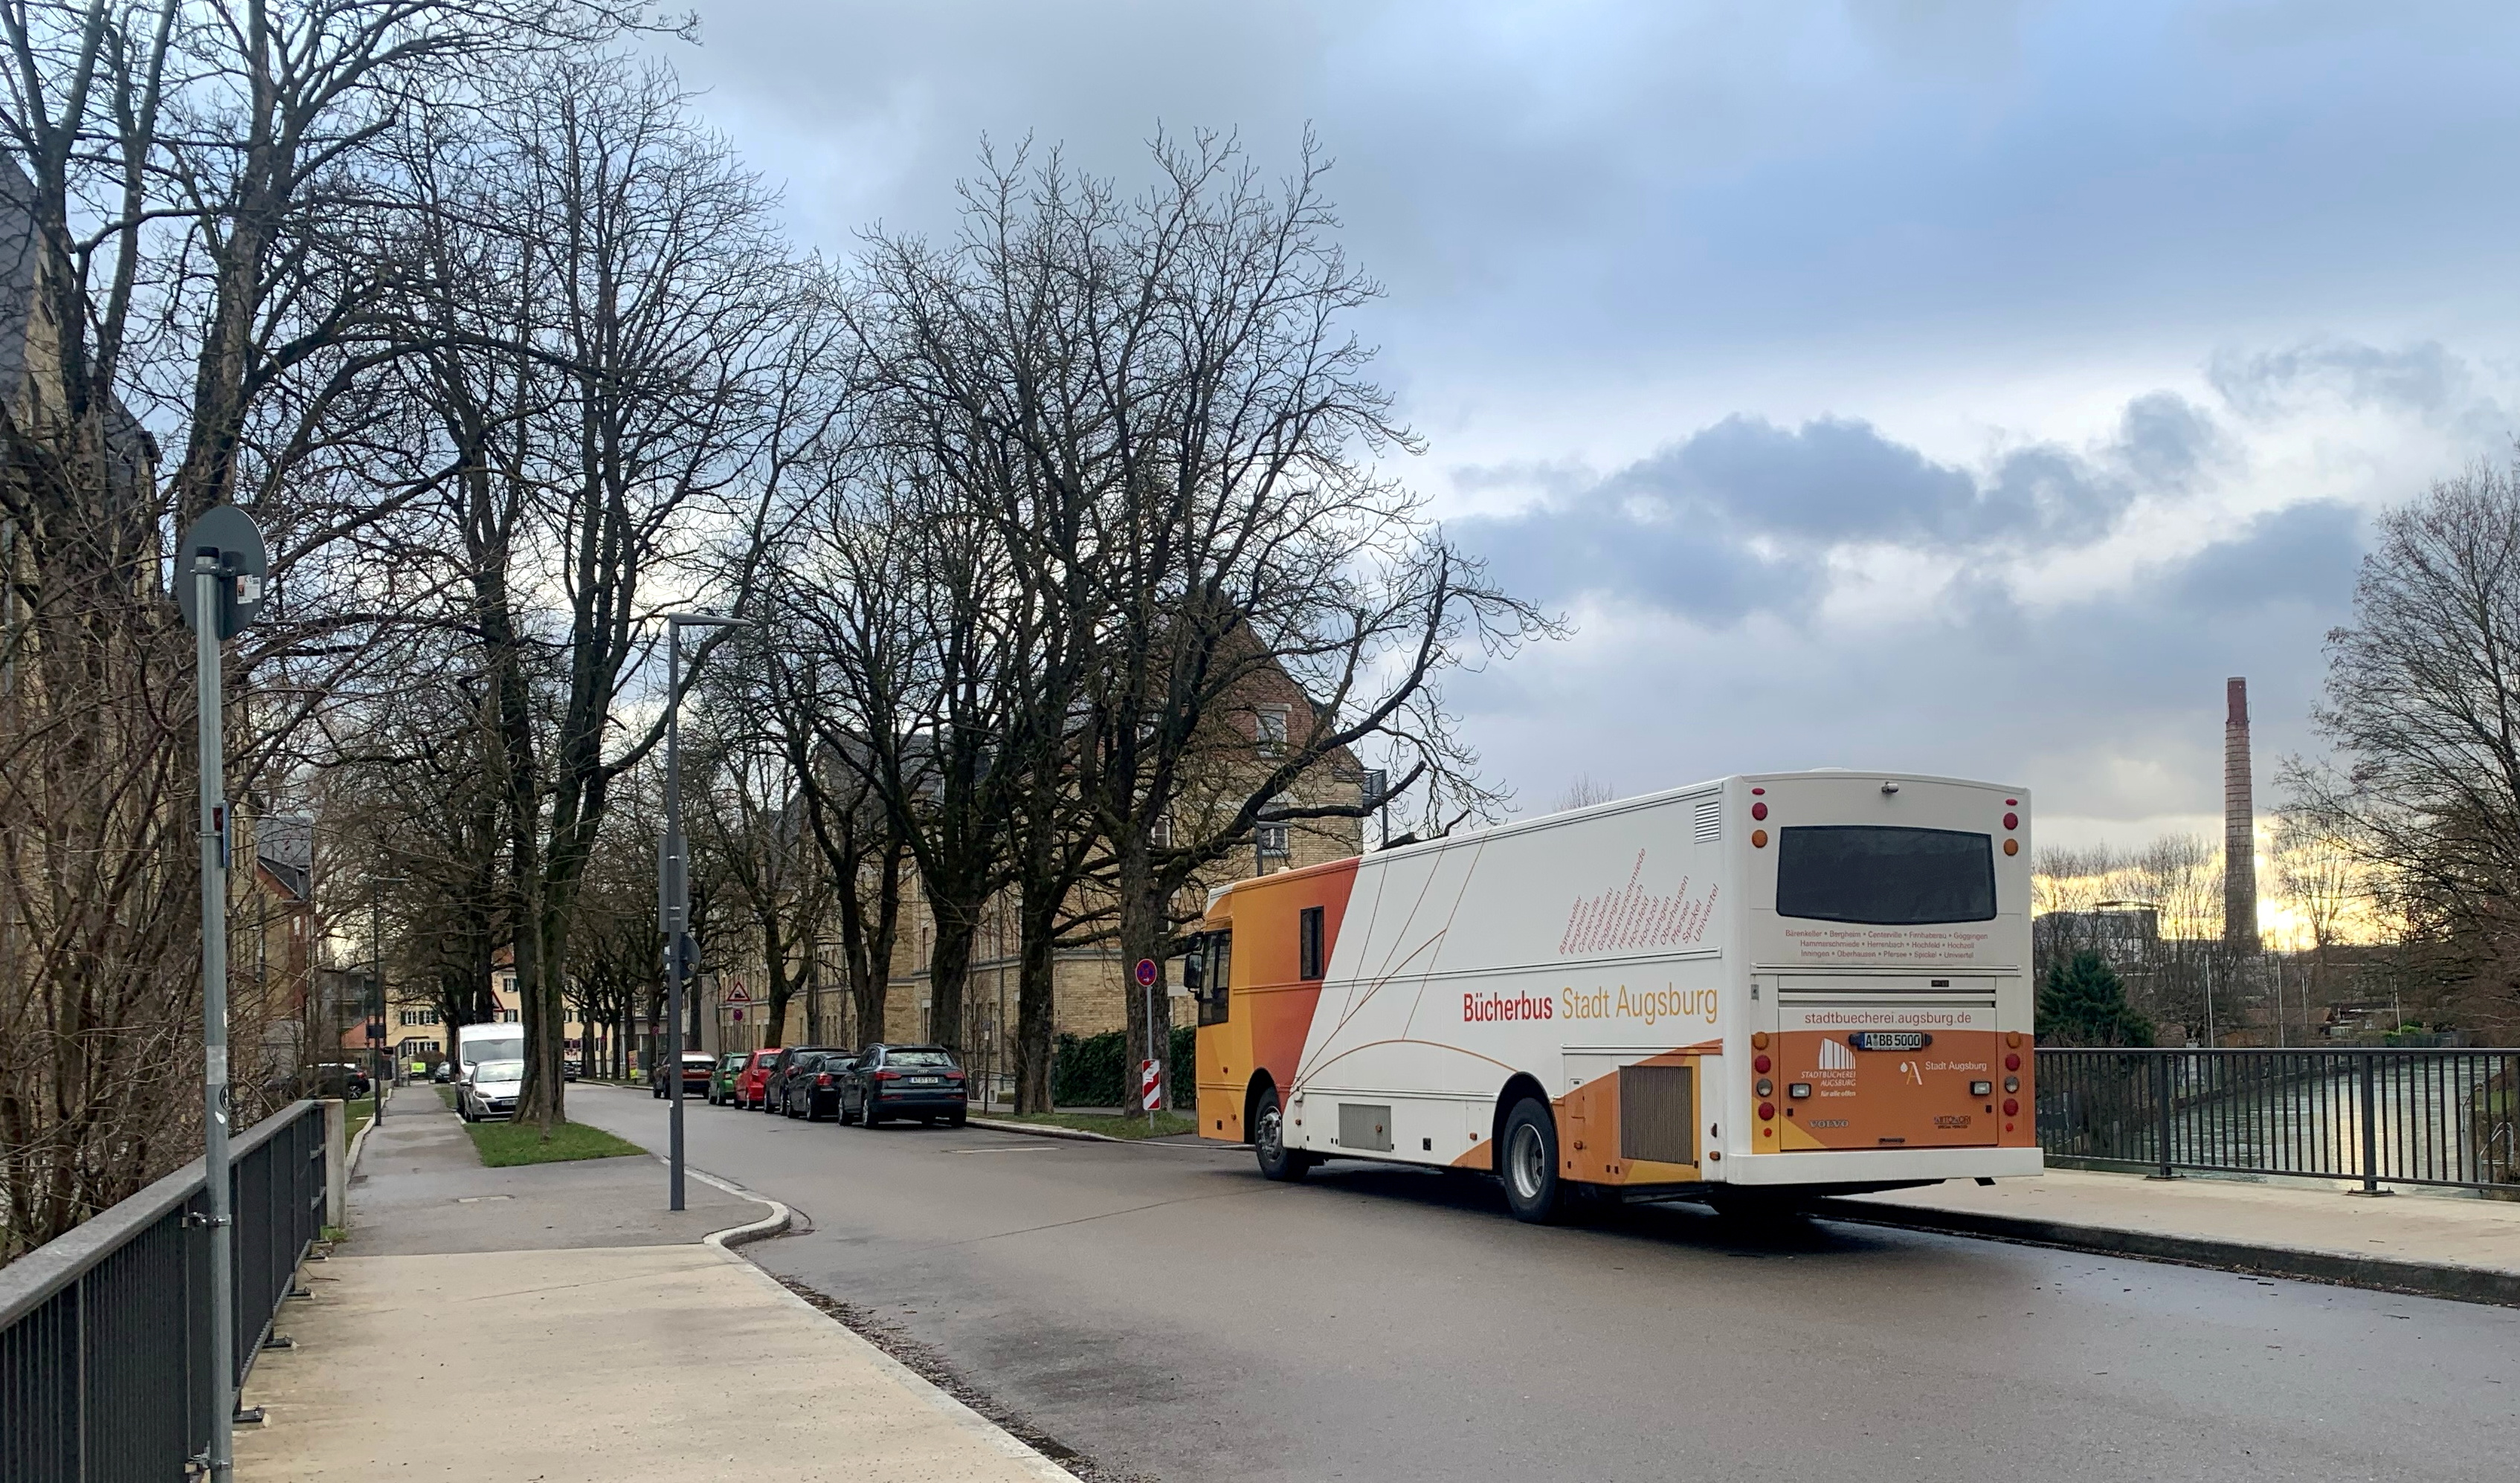 ein Bus in orange und weiß und der Aufschrift "Bücherbus Stadt Augsburg" fährt auf einer leeren Straße. 